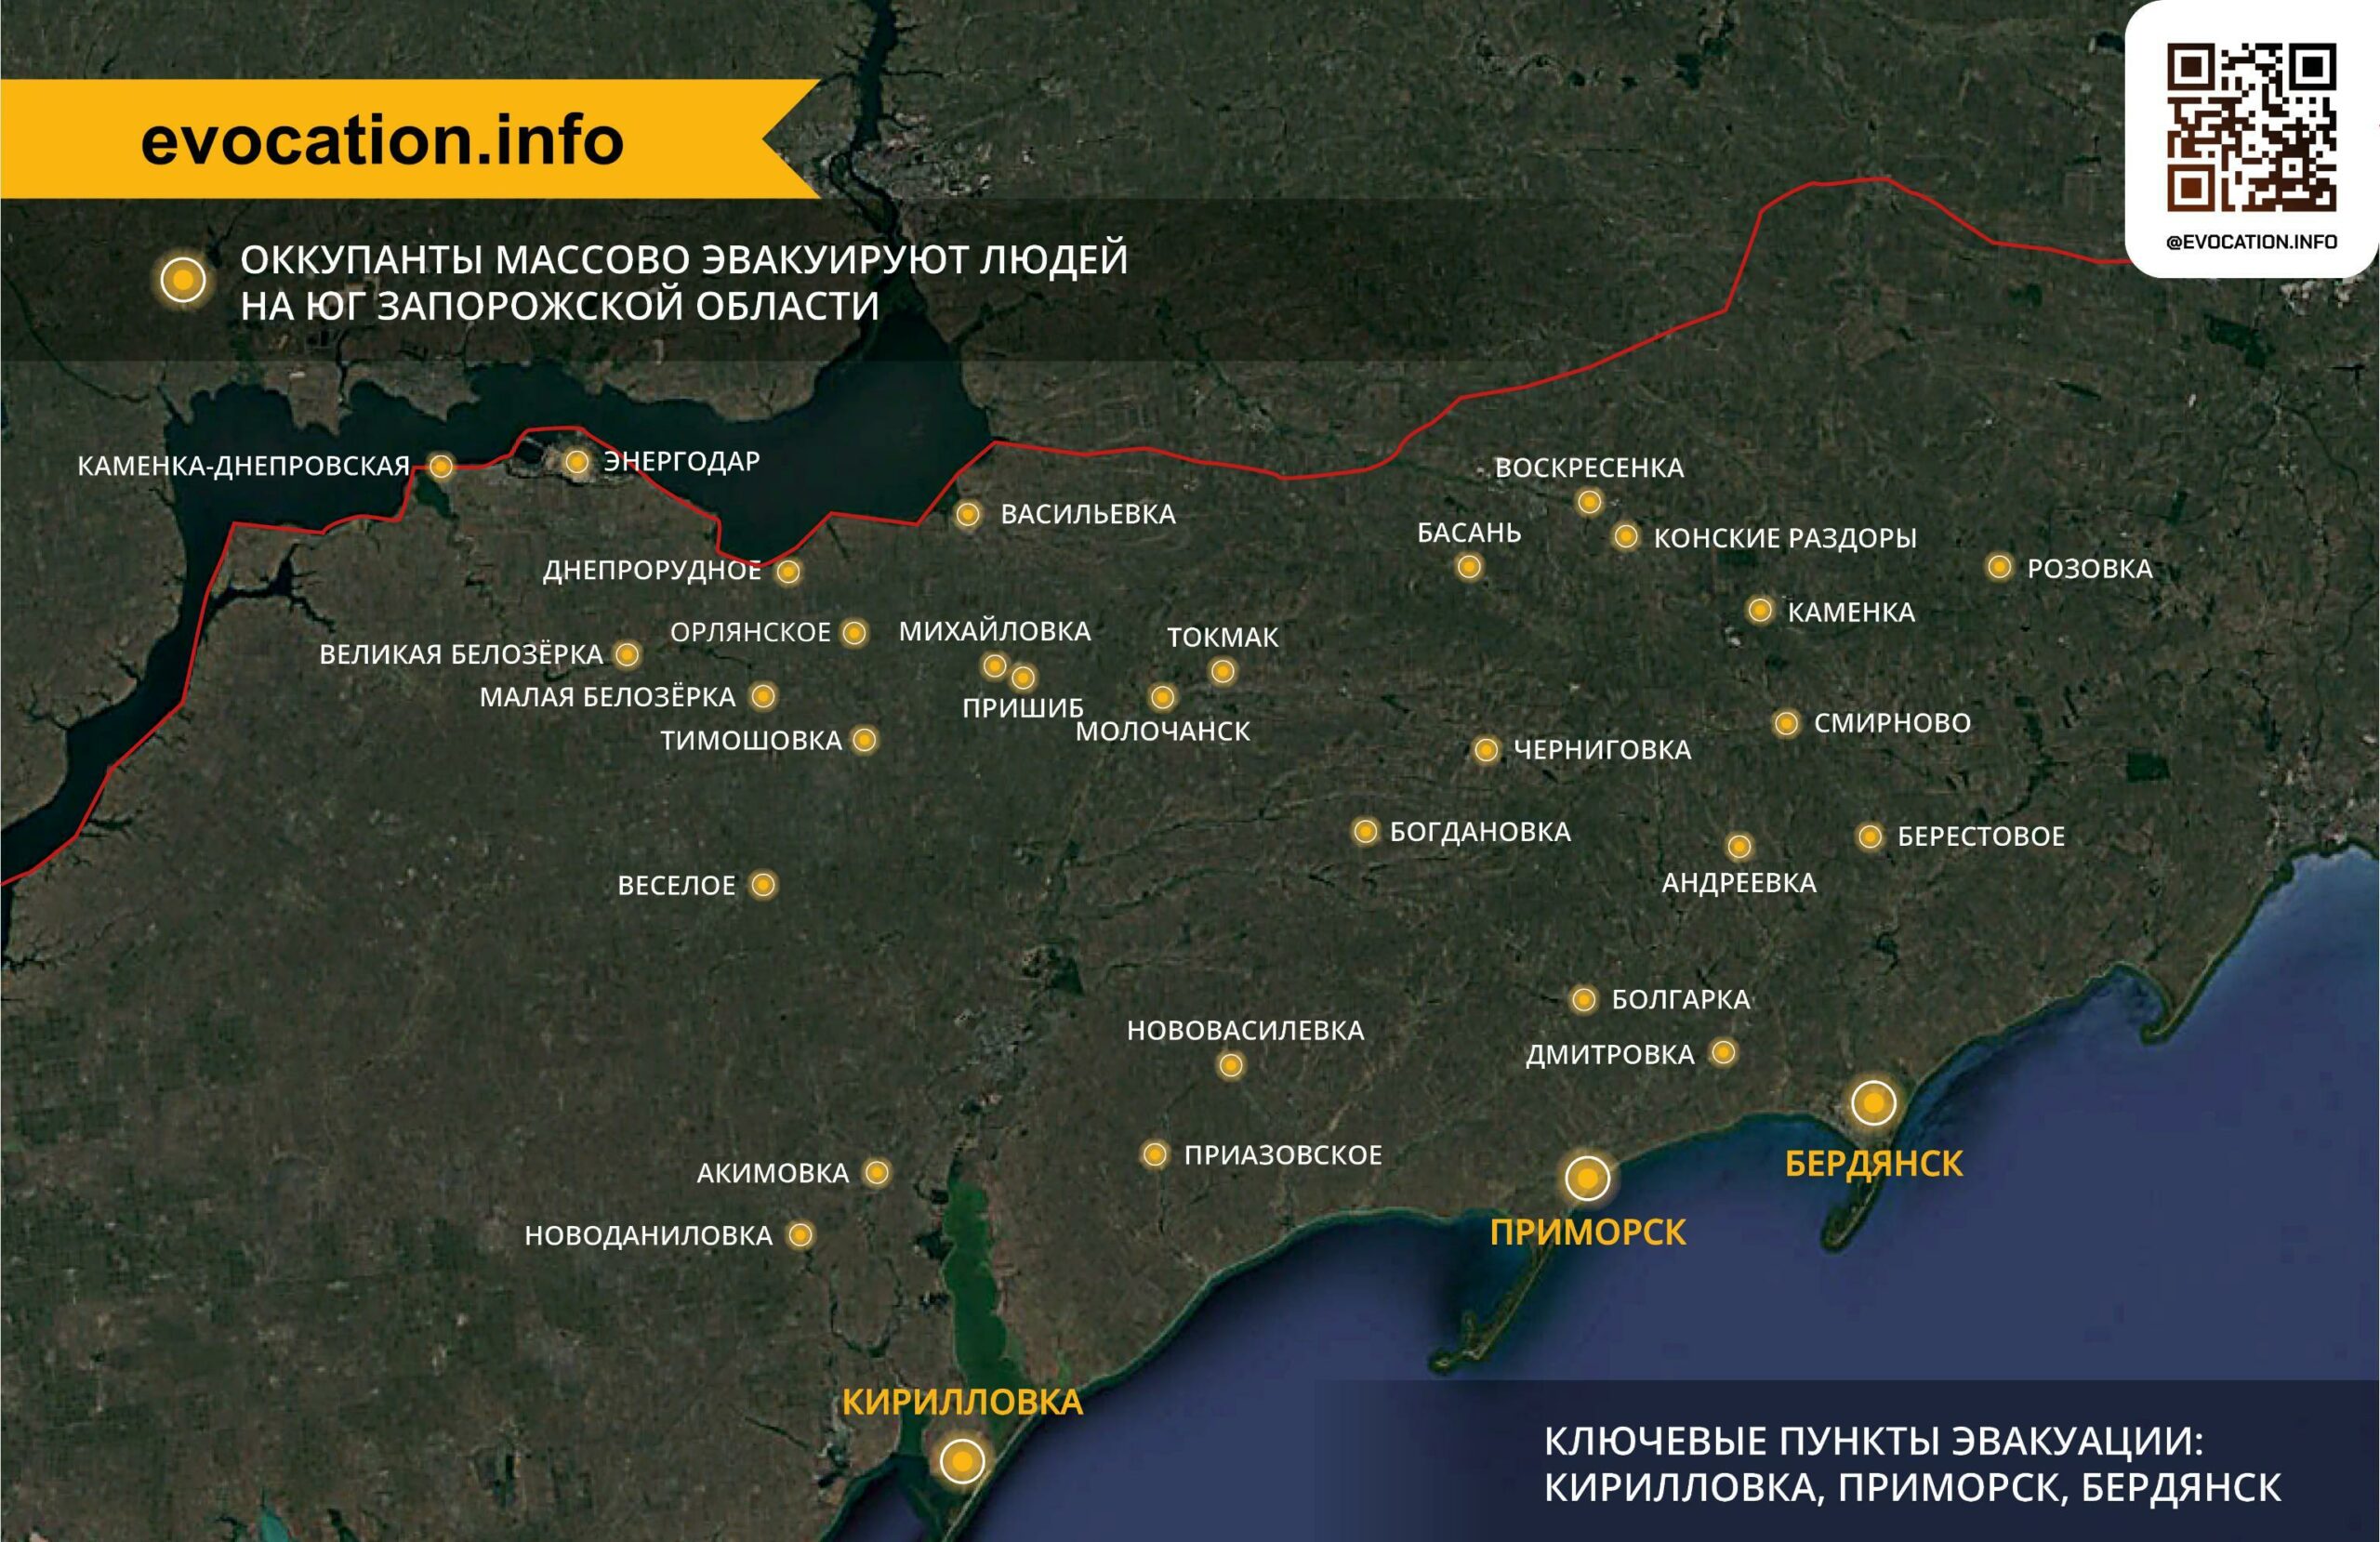 Evakuációs tervek Dél-Ukrajnában. Forrás: evocation.info